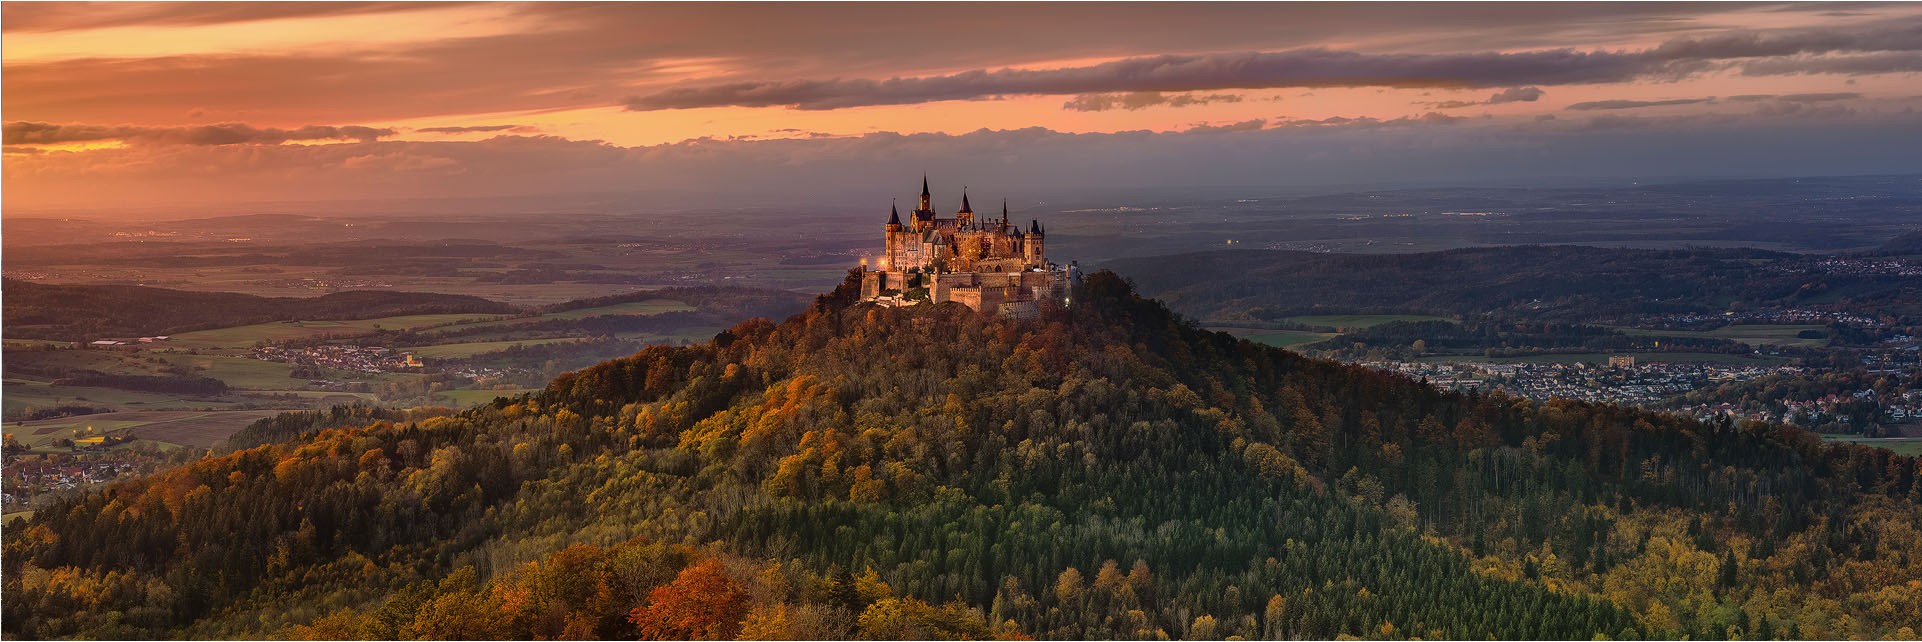 Burg Hohenzollern - Mittel- Süddeutschland und